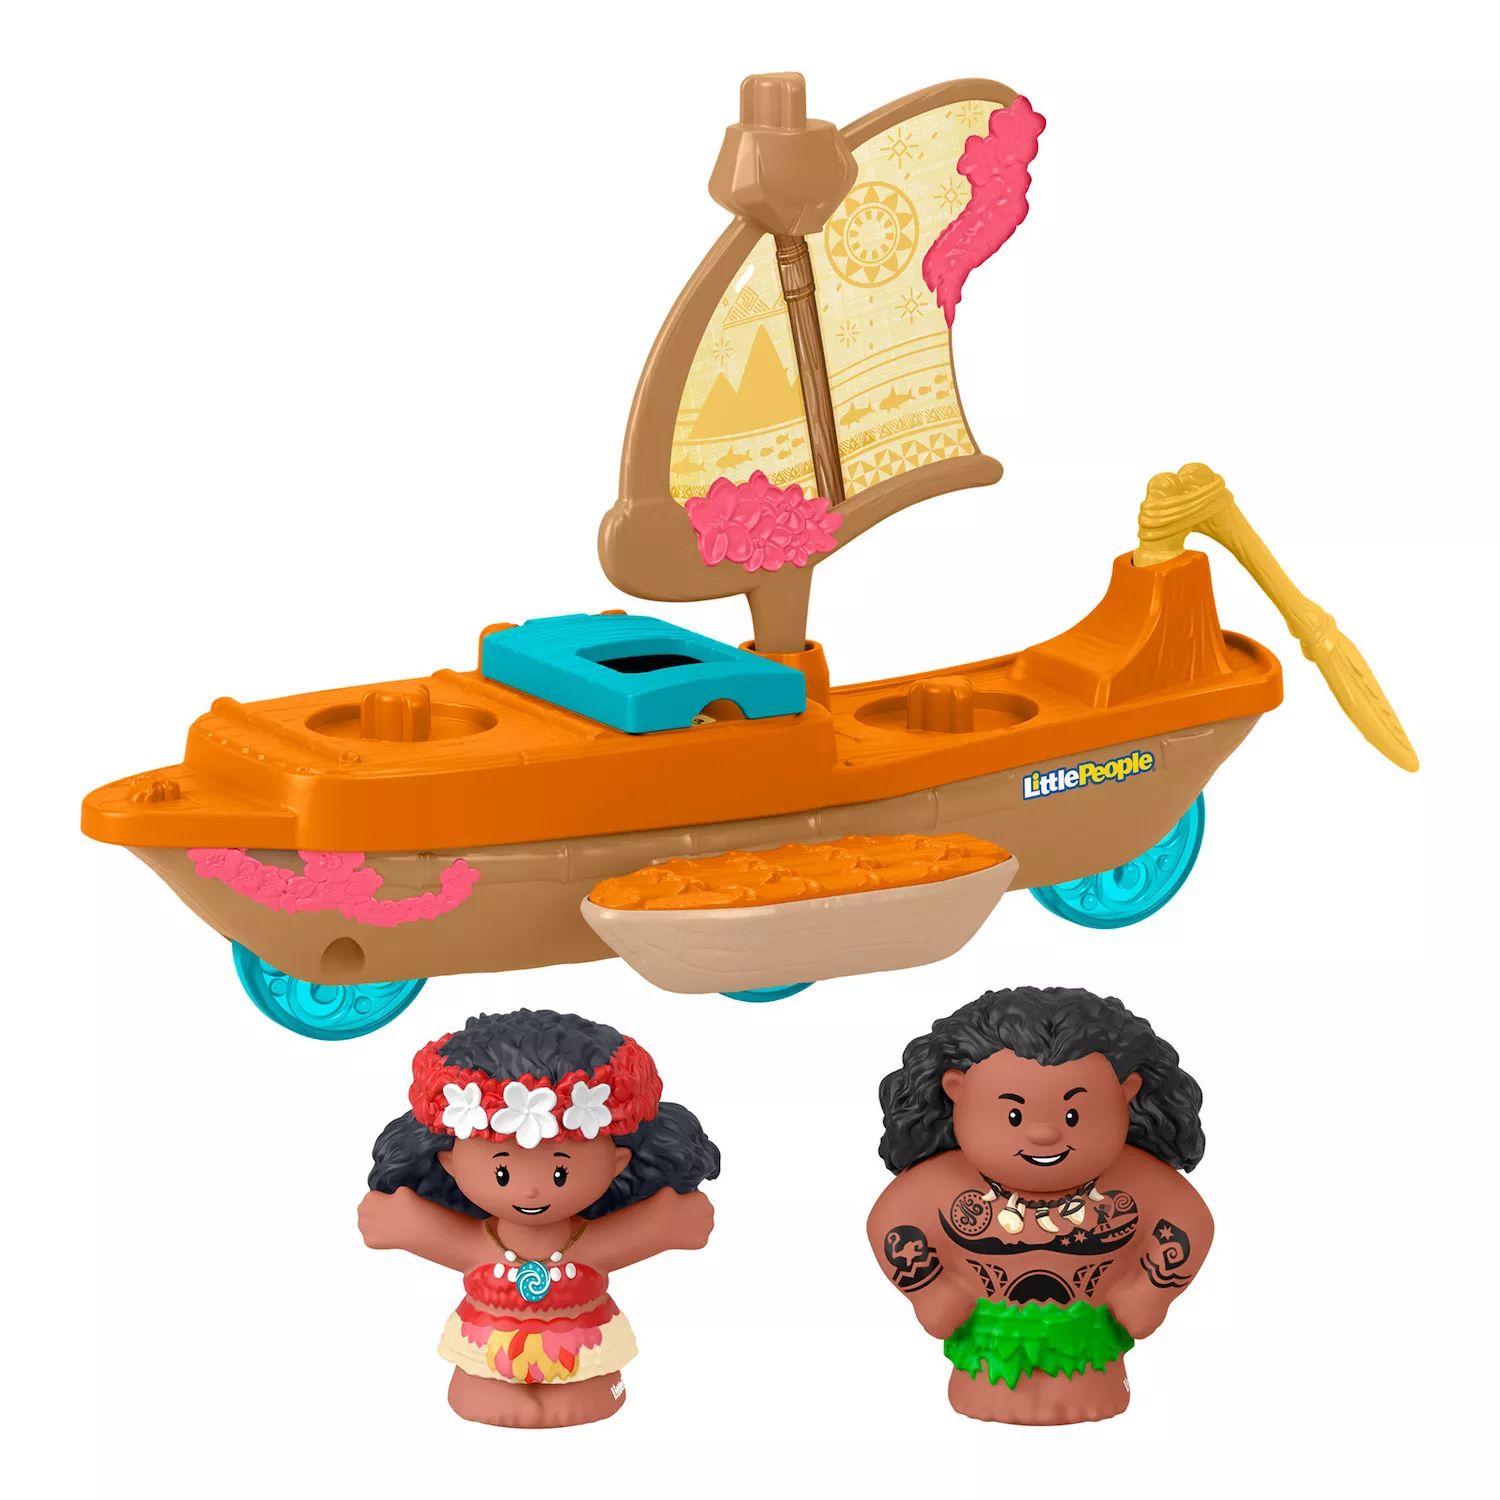 Набор каноэ и фигурок Disney's Moana & Maui Little People от Fisher-Price Little People фото